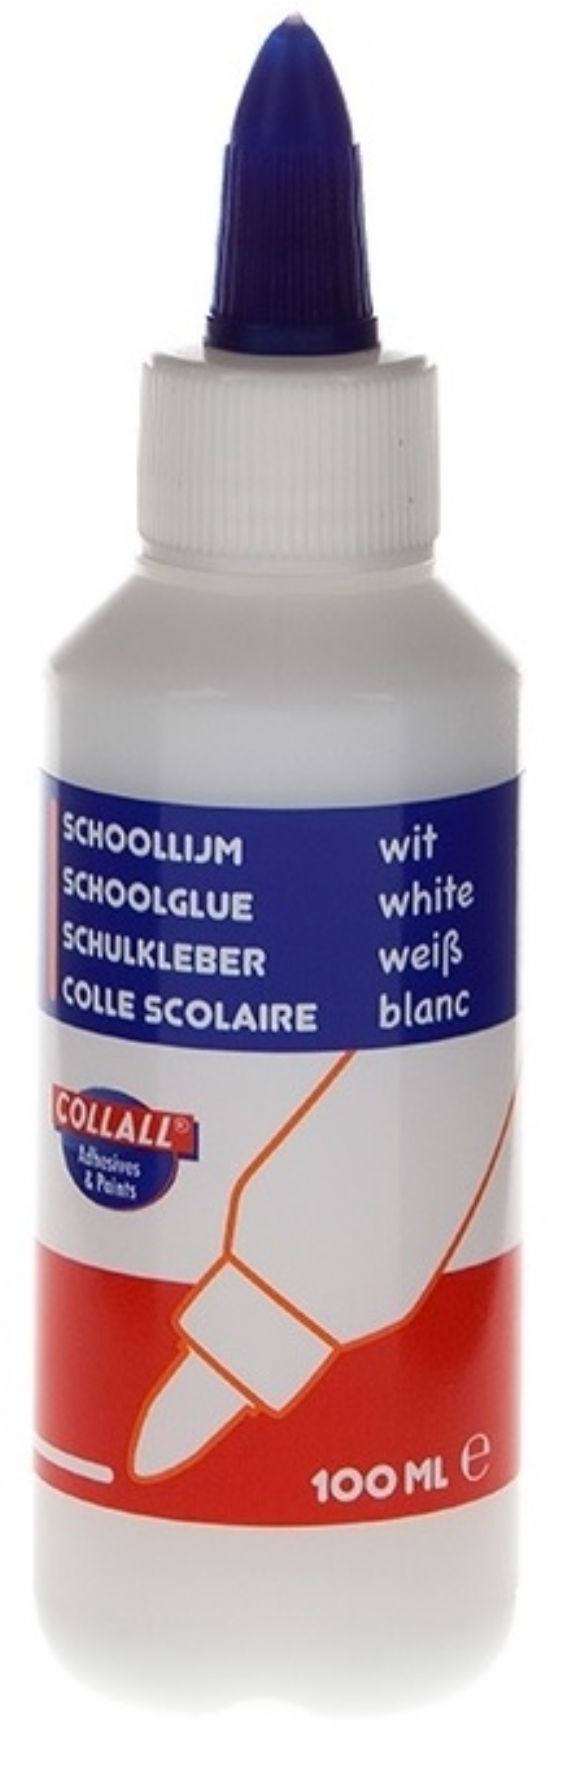 Collall schoollijm/slijmlijm wit, 100 ml